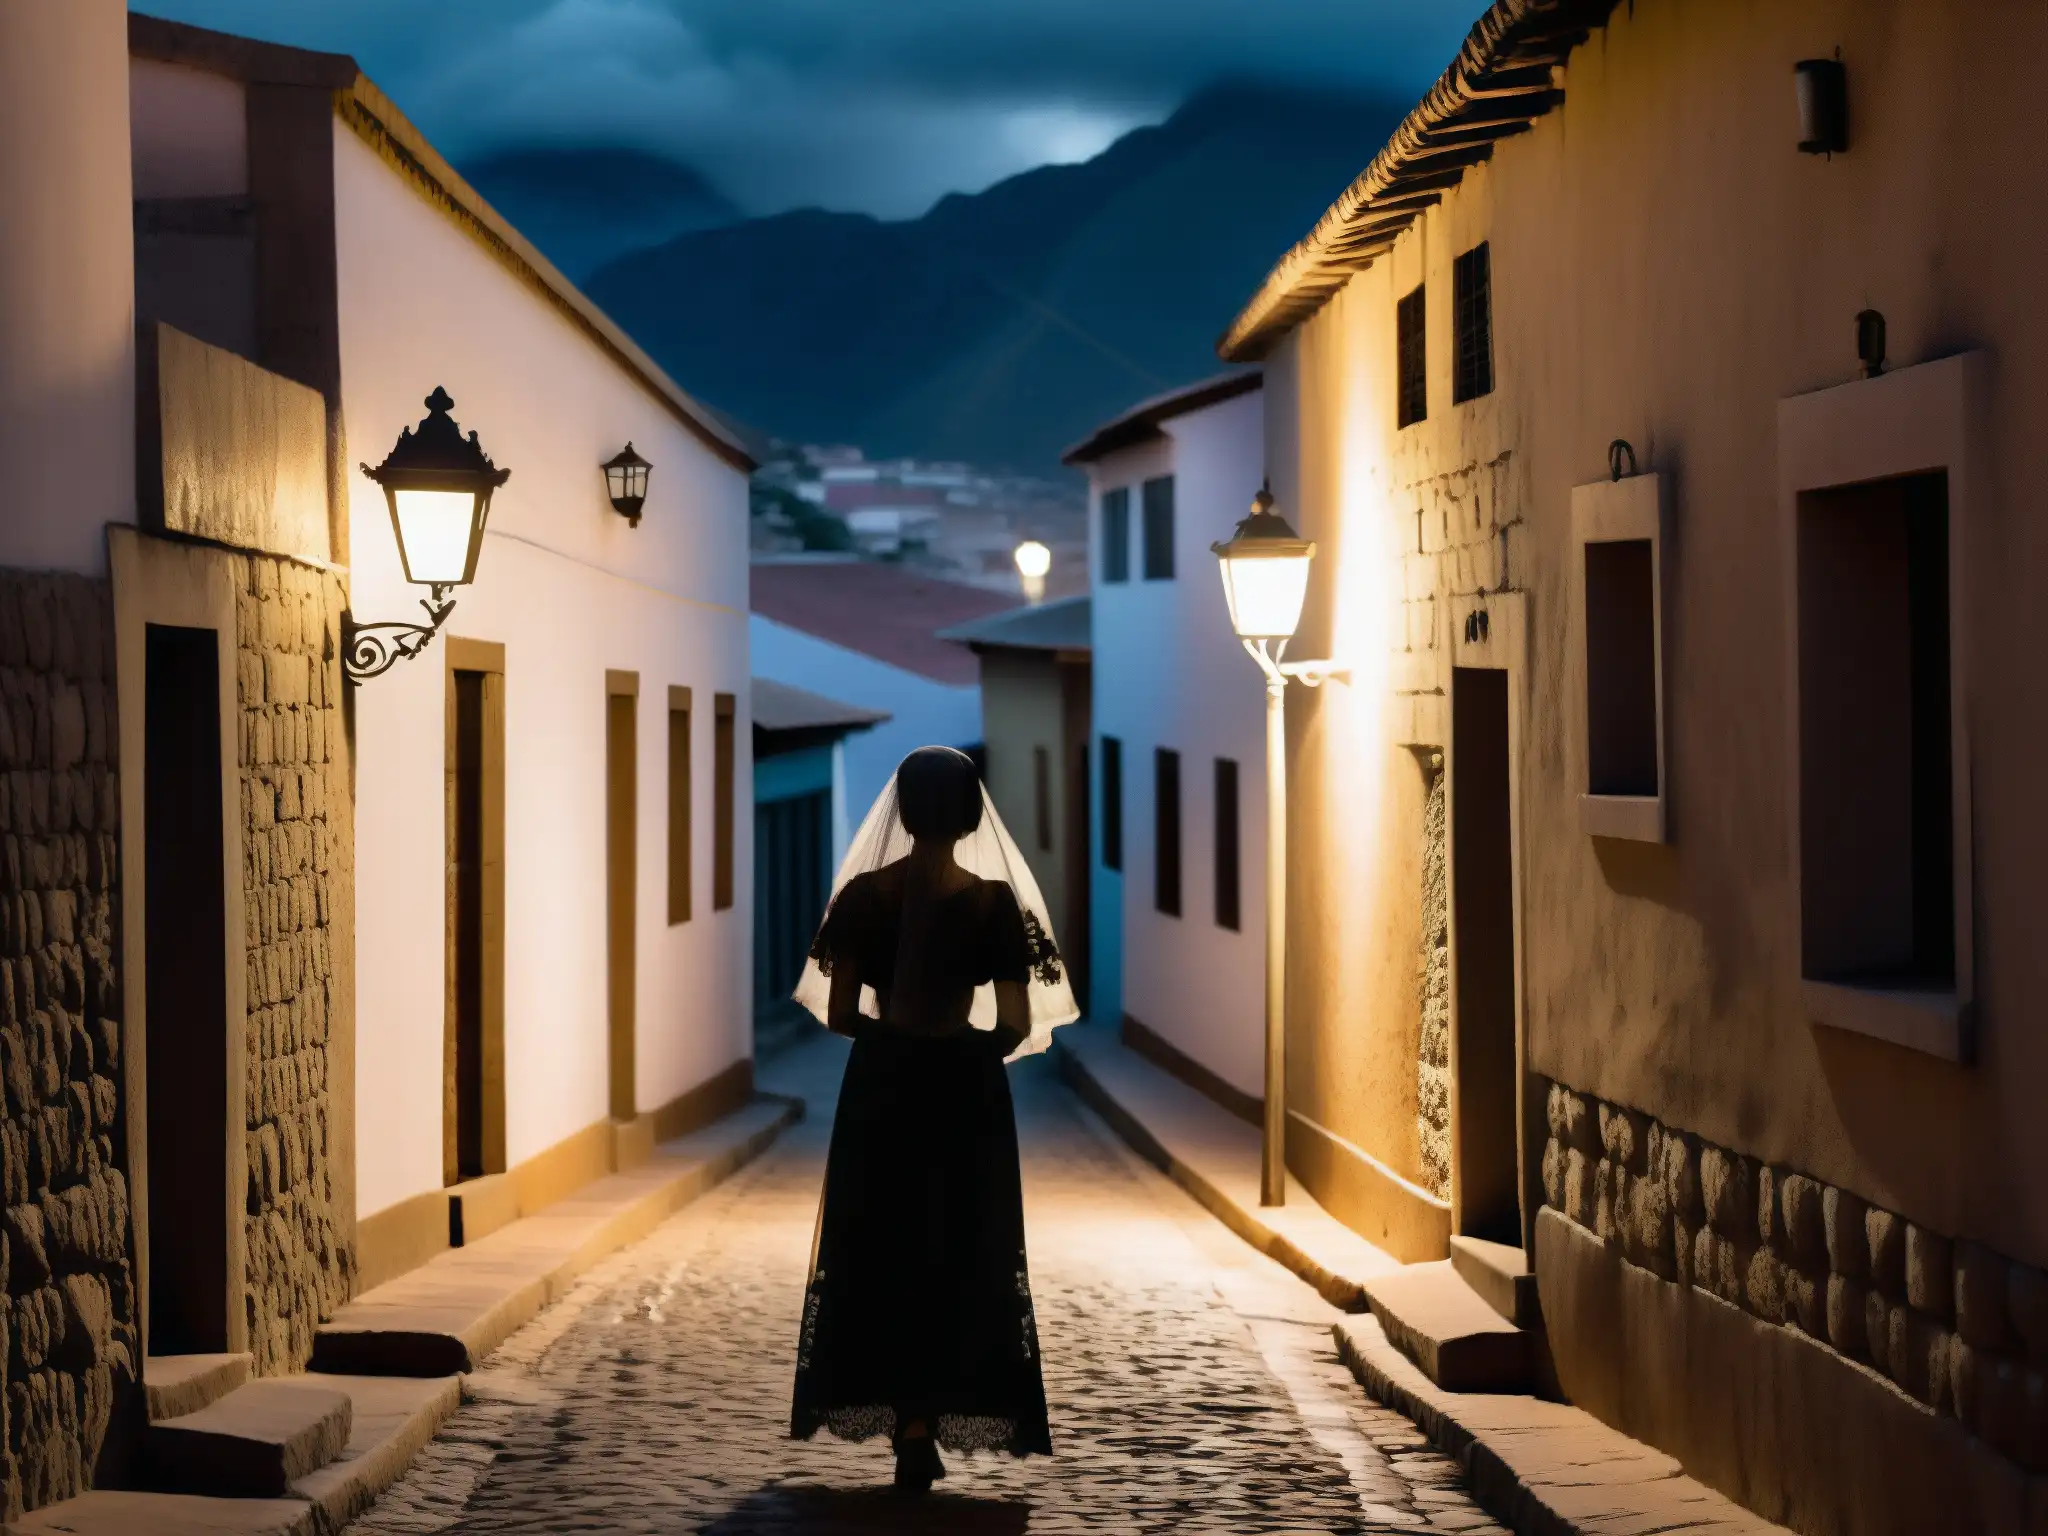 Alleyway en la ciudad peruana con la misteriosa silueta de La Viudita leyenda peruana bajo la luz tenue, evocando misterio y melancolía